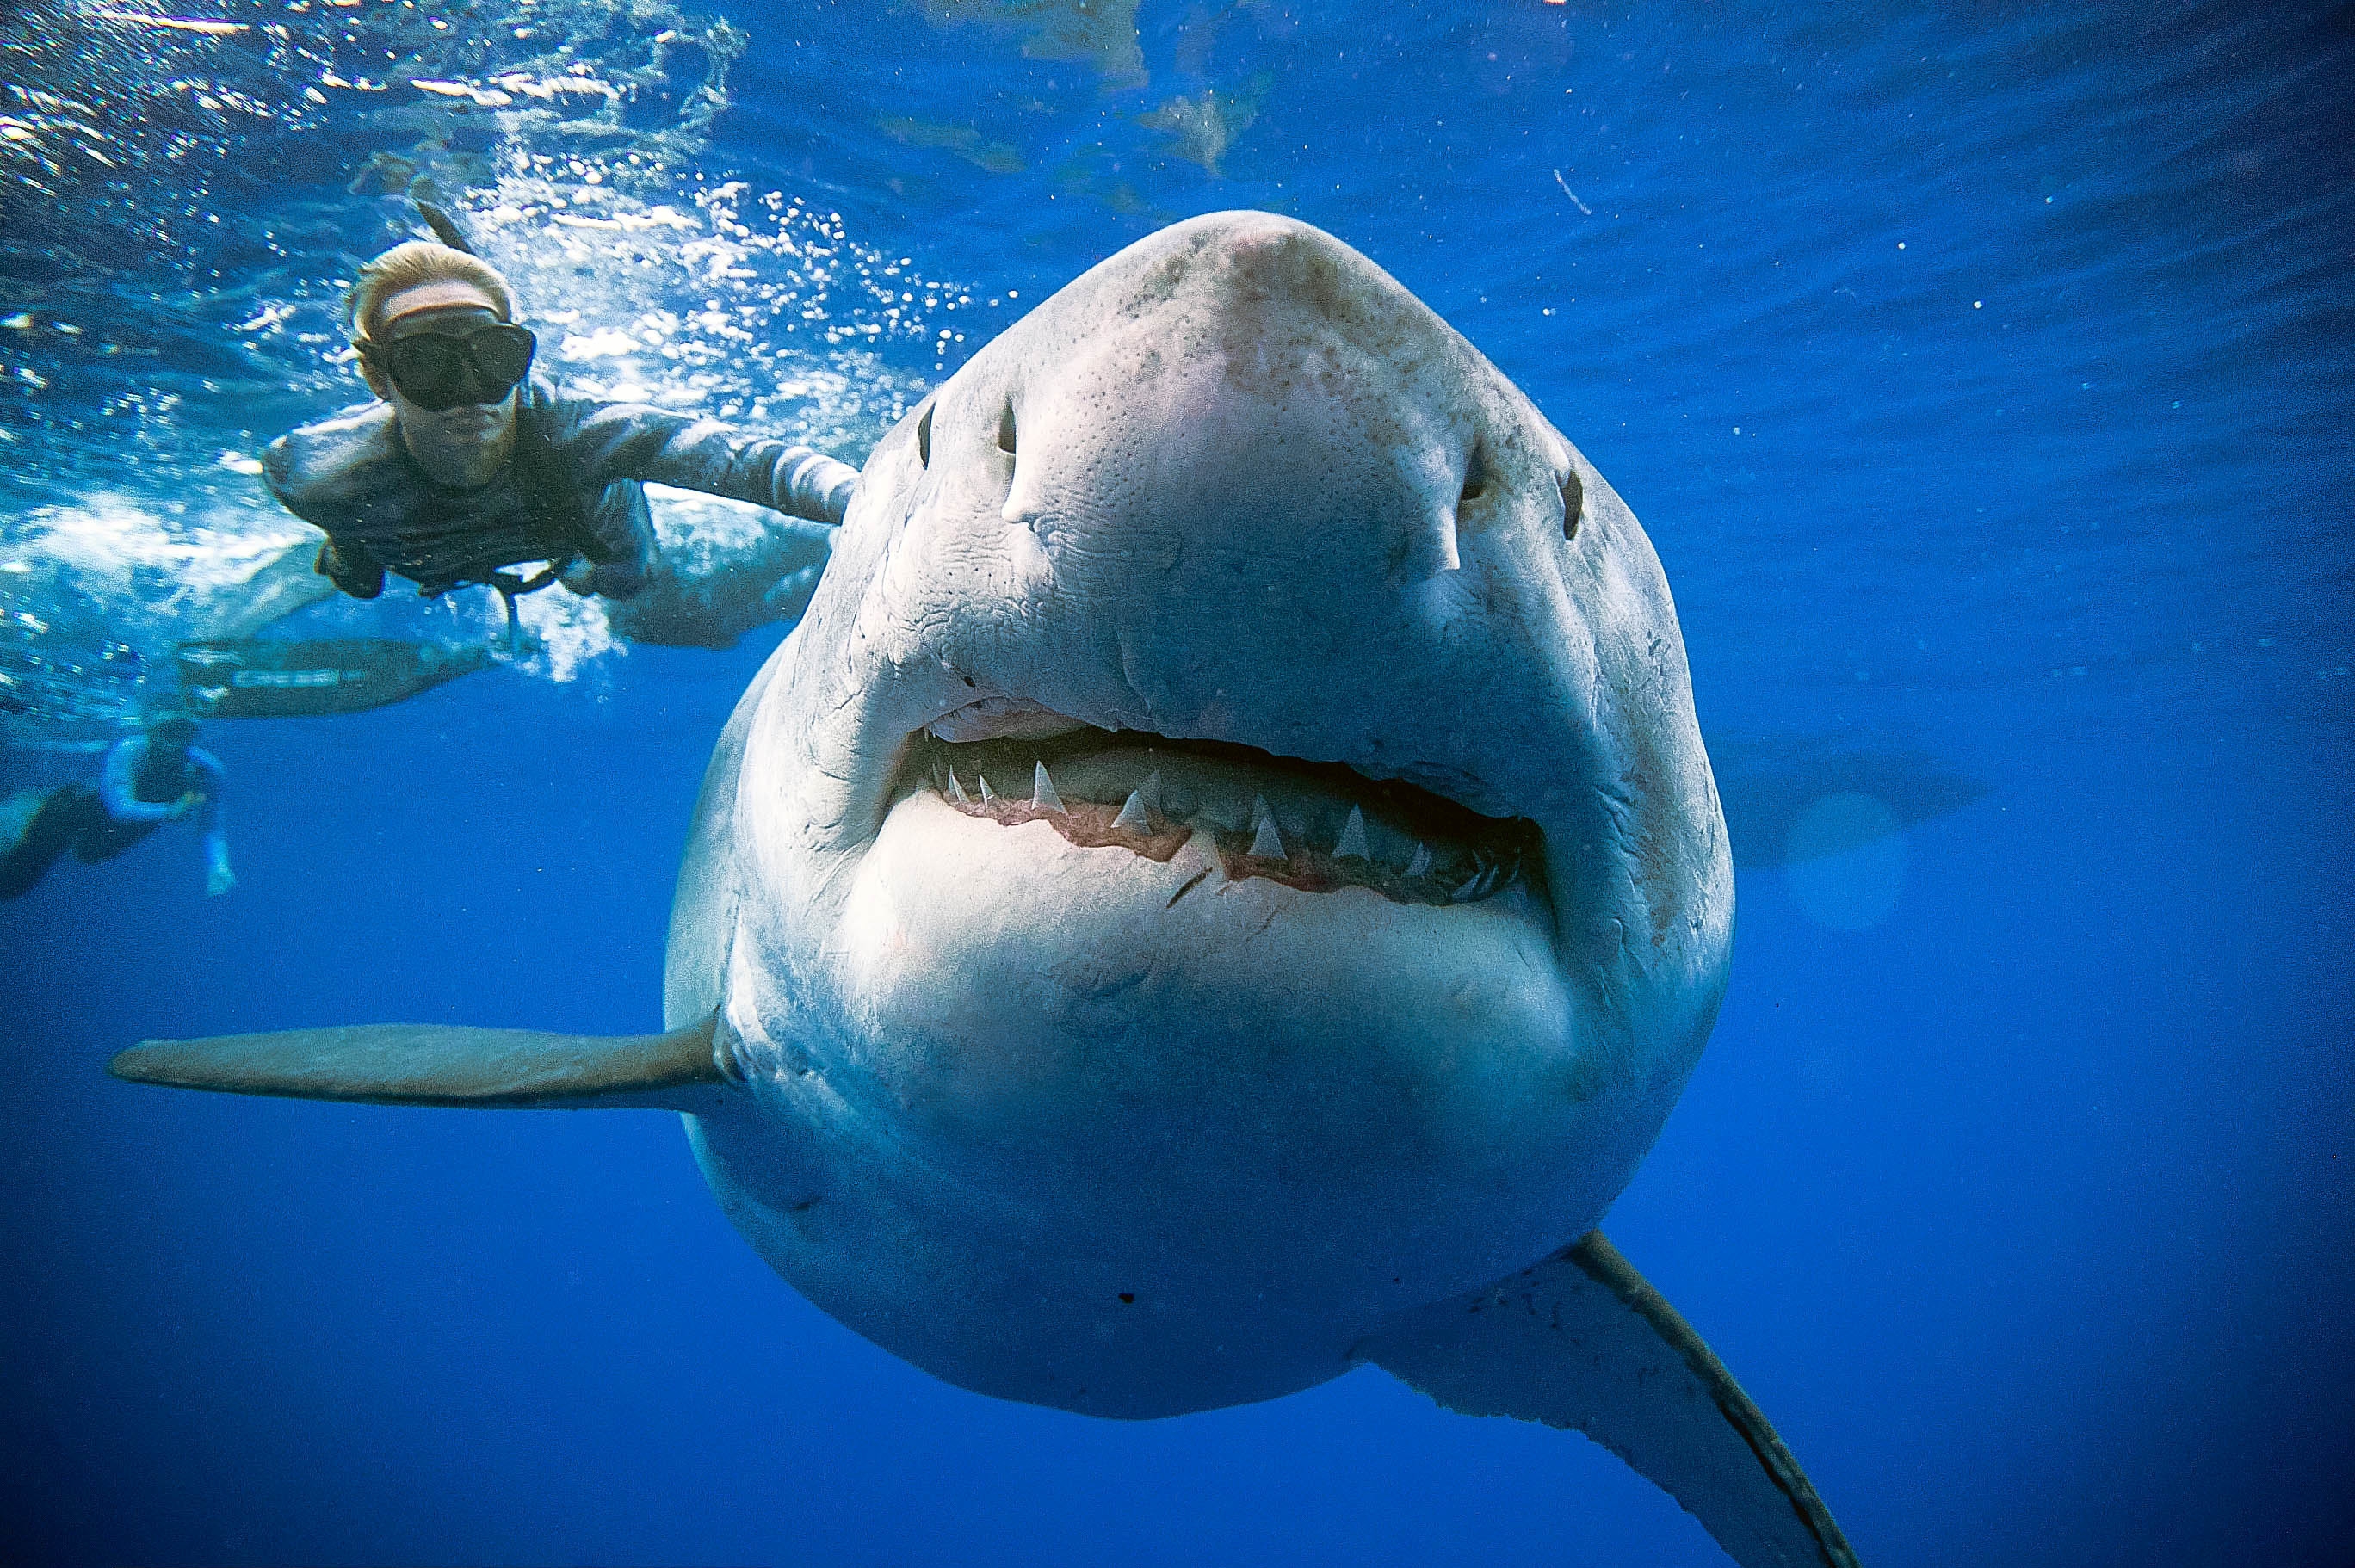 Девушка поплавала возле огромной акулы-людоеда и напугала пользователей сети - ВИДЕО